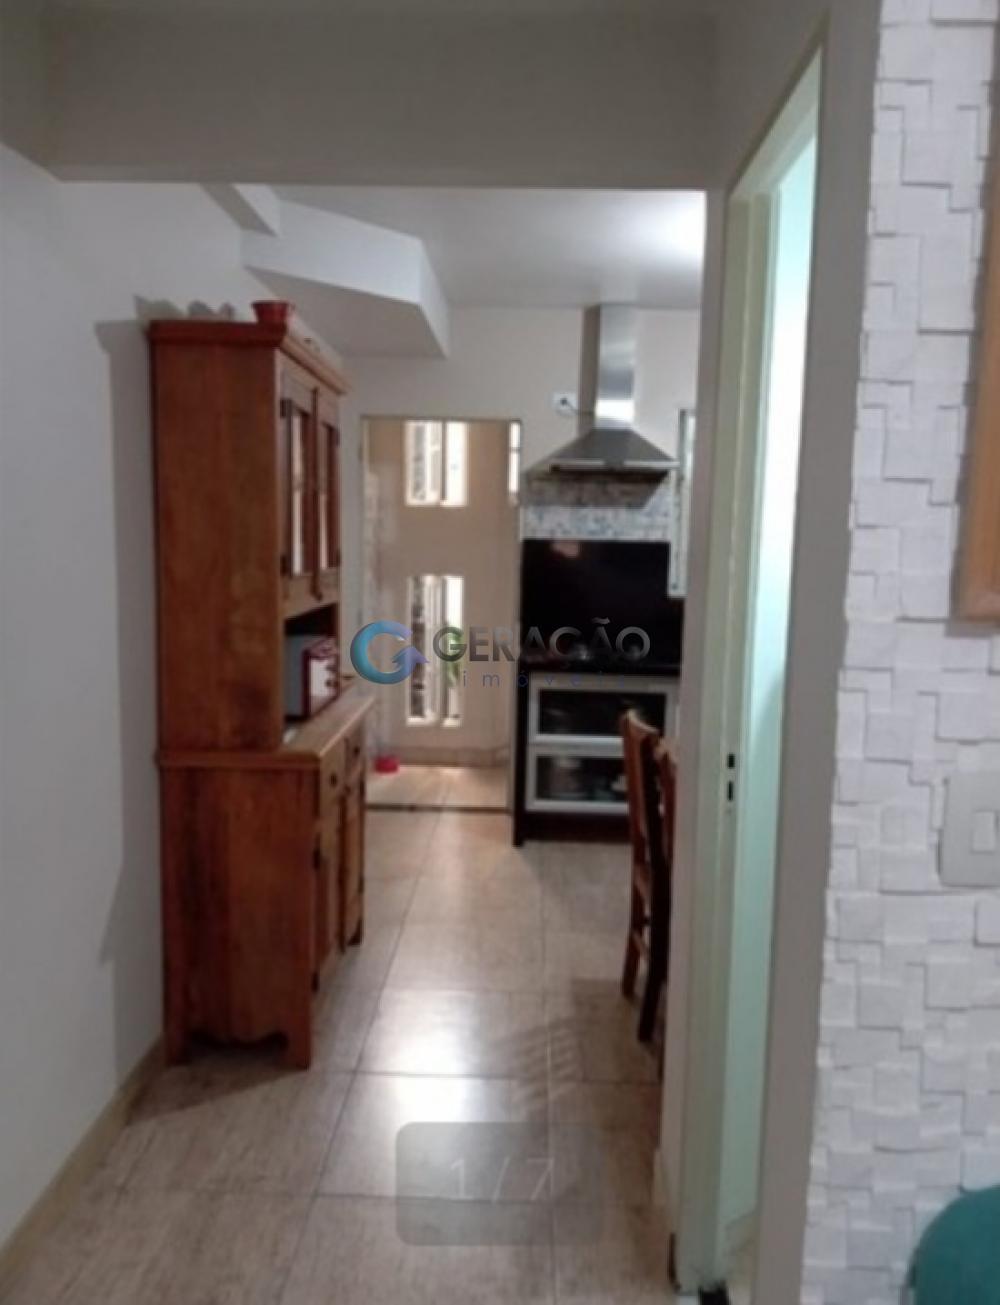 Comprar Casa / Condomínio em São José dos Campos R$ 290.000,00 - Foto 1